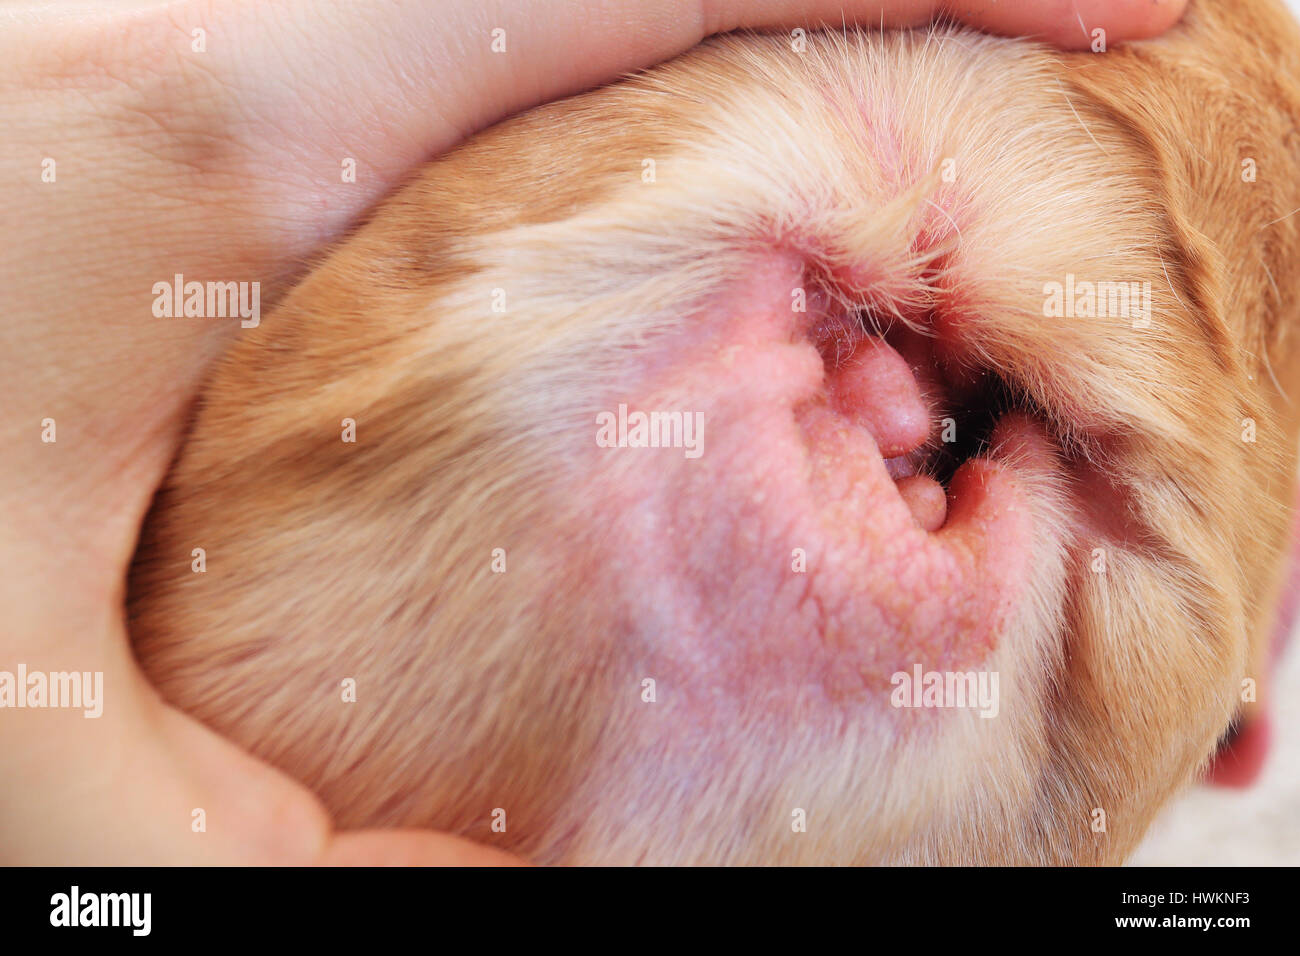 Allergia su orecchio close-up. Il controllo veterinario cane orecchio. Red illing orecchio interno. Foto Stock